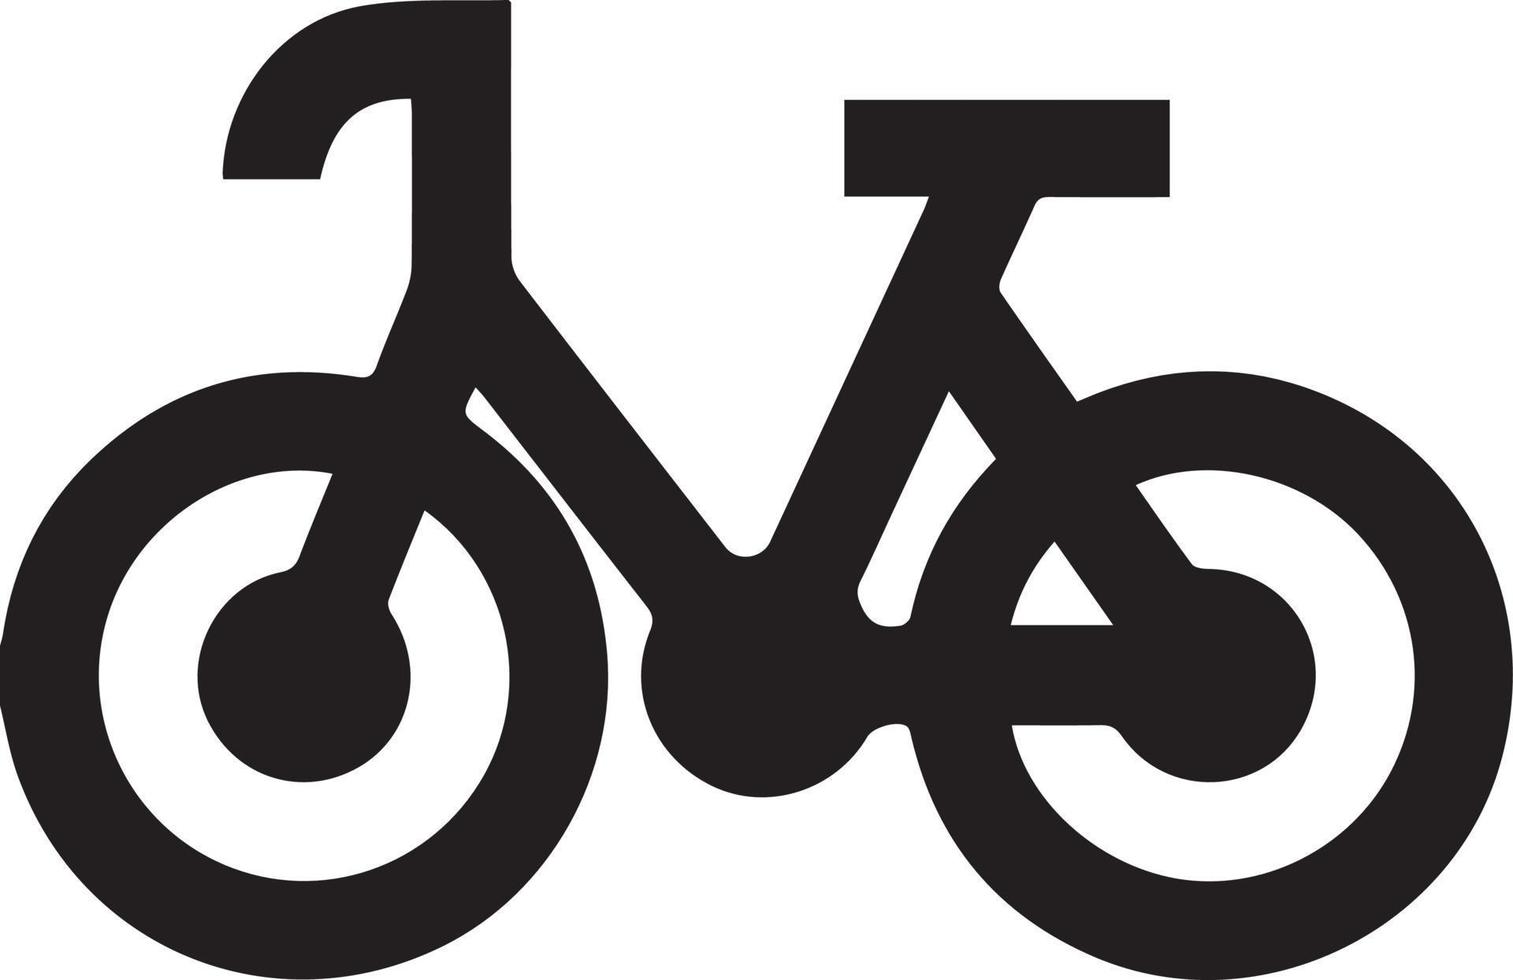 cykel ikon. cykel lopp symbol. cykling lopp platt ikon. cyklist tecken. väg cyklist silhuett. sporter logotyp vektor